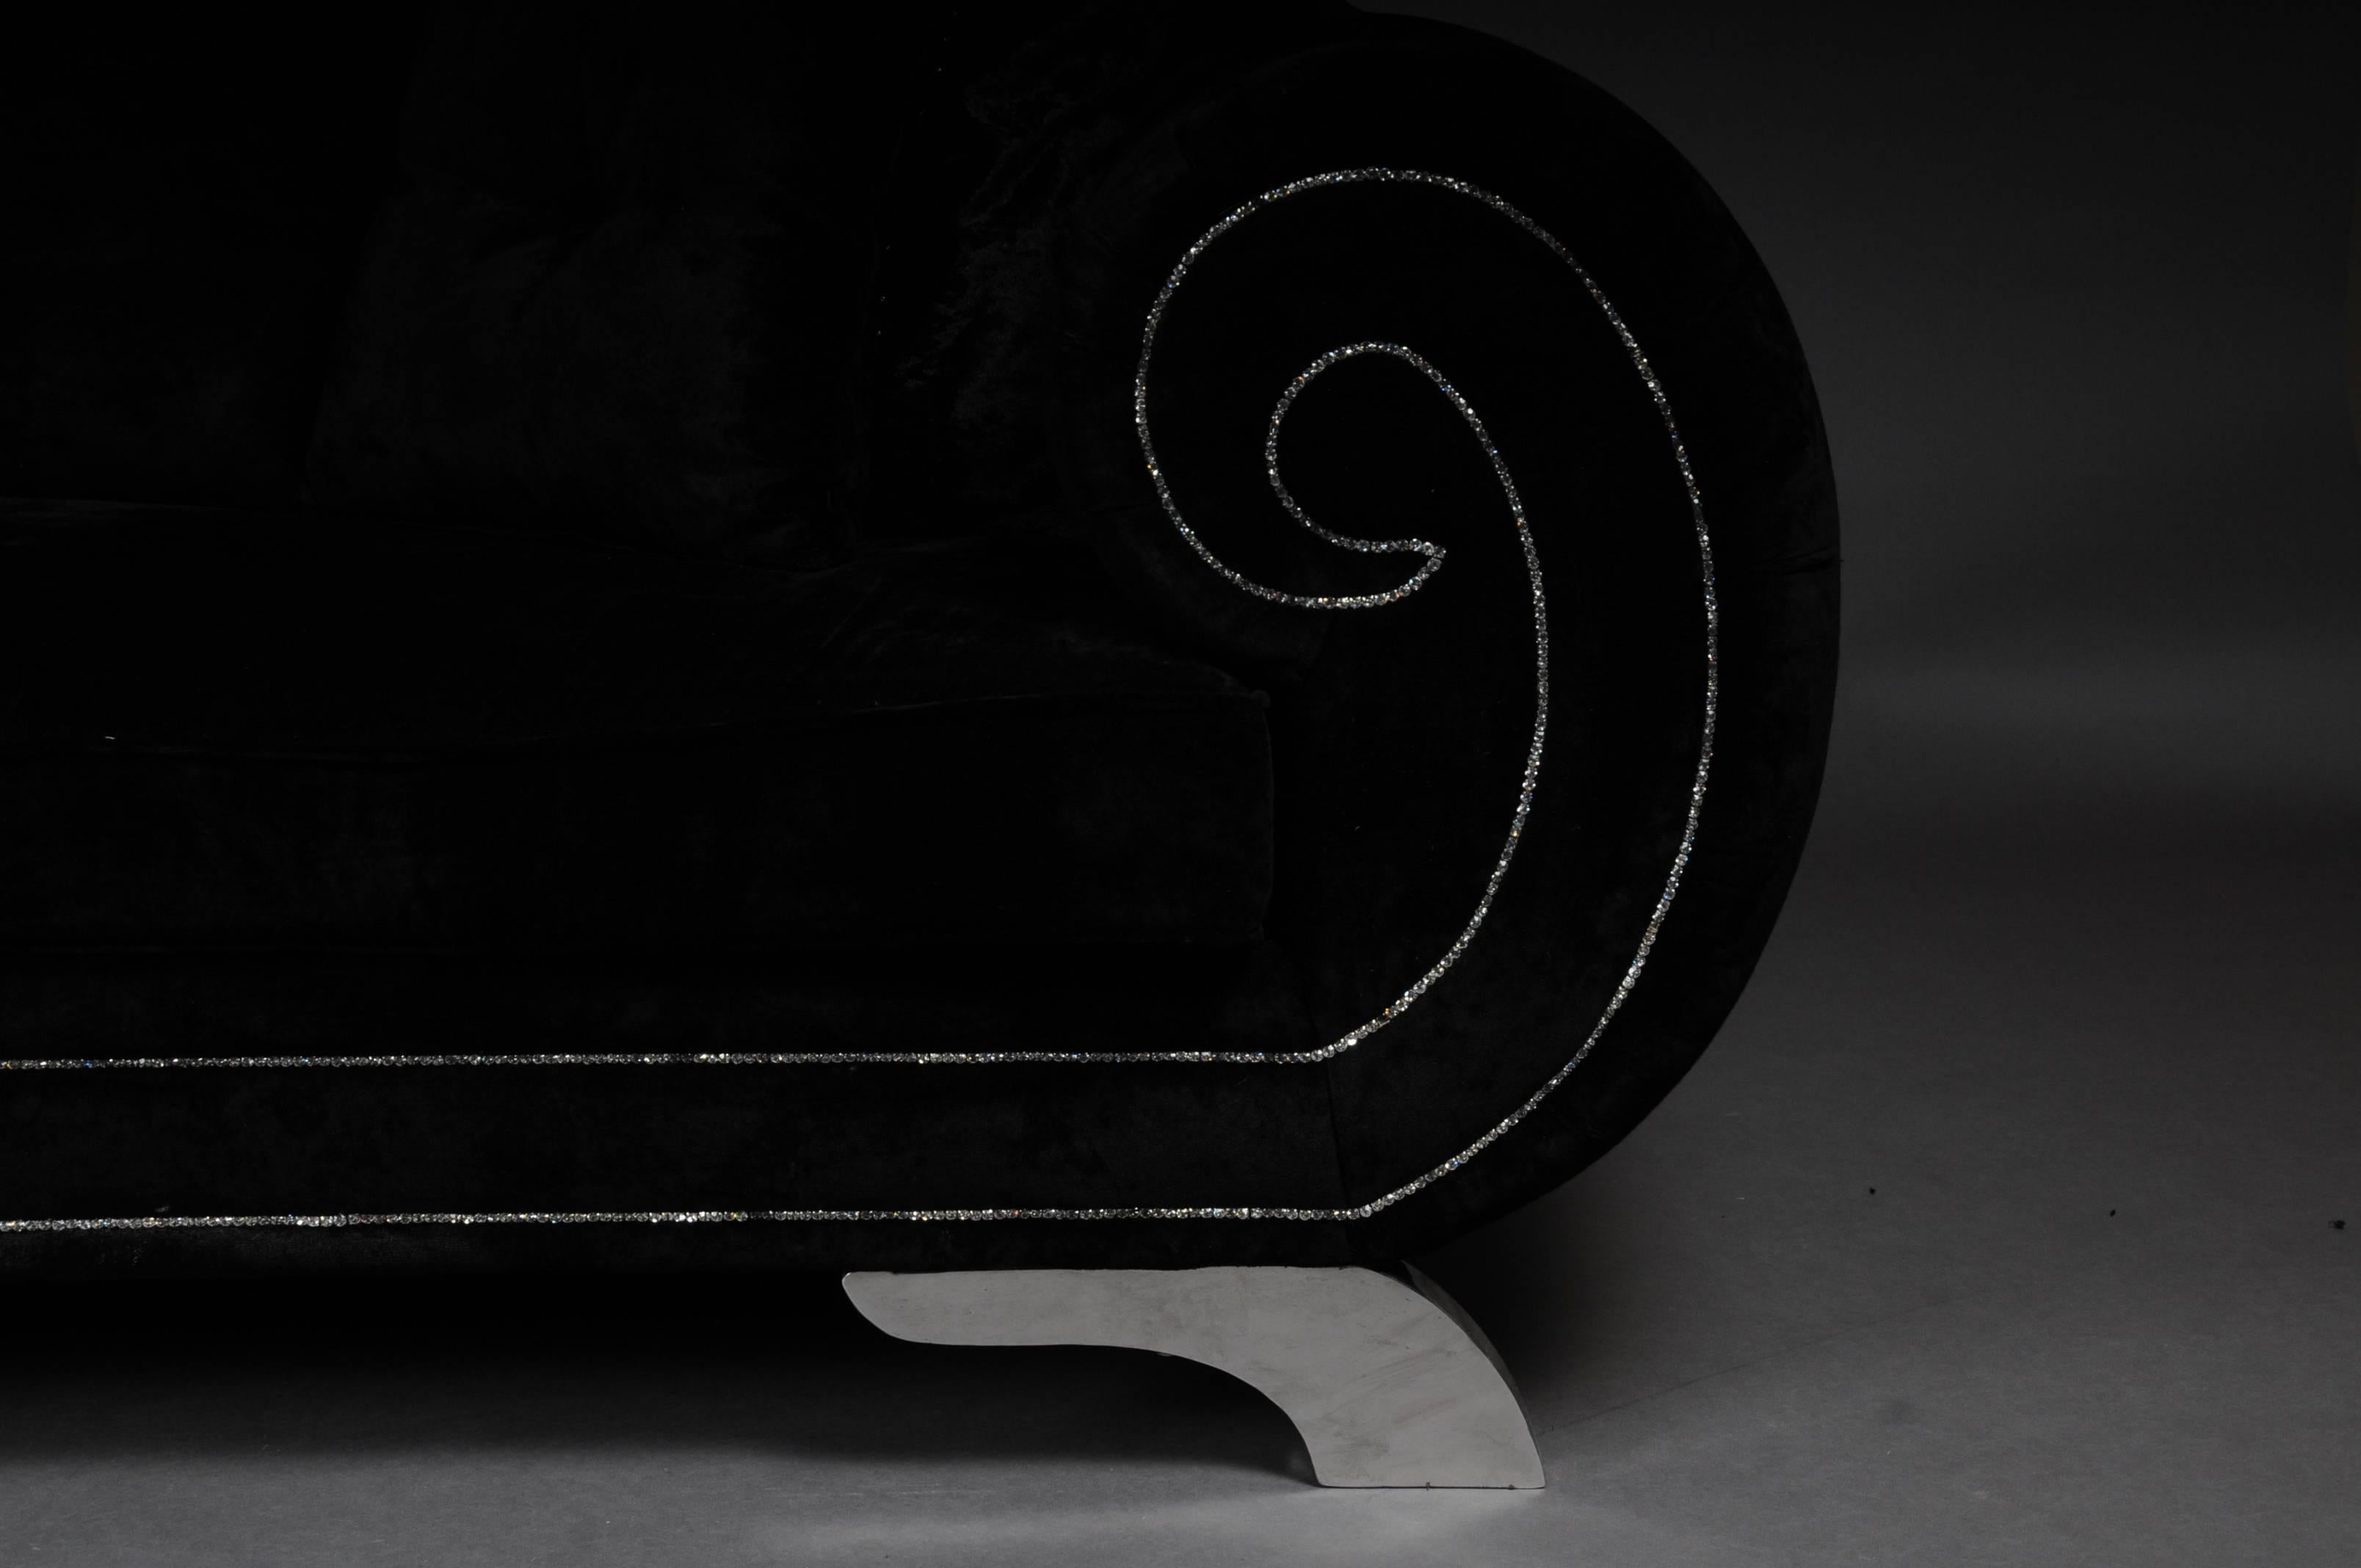 Einzigartiges luxuriöses Designersofa, Strasssteine, schwarzer Samt. Highlight ausgefallenes und hochwertiges Sofa in schwarzem Samt. Körper veredelt mit Strasssteinen. Das Sofa steht auf vier Chromfüßen. Sehr modern, komfortabel und ein absoluter